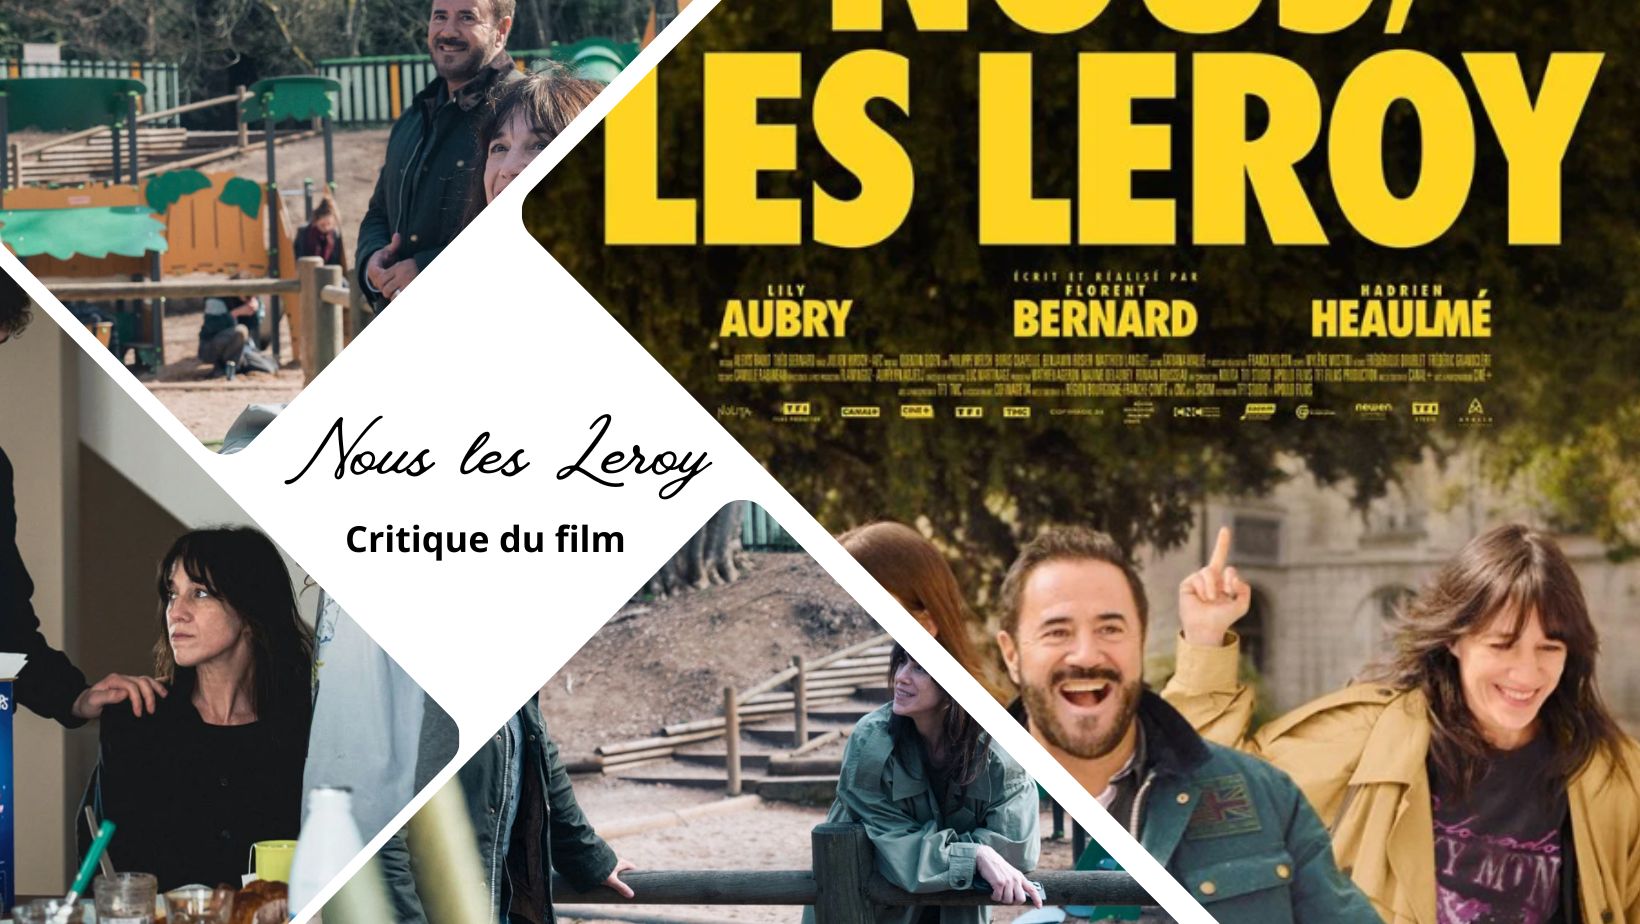 Nous, les Leroy avec Charlotte Gainsbourg - Critique du film